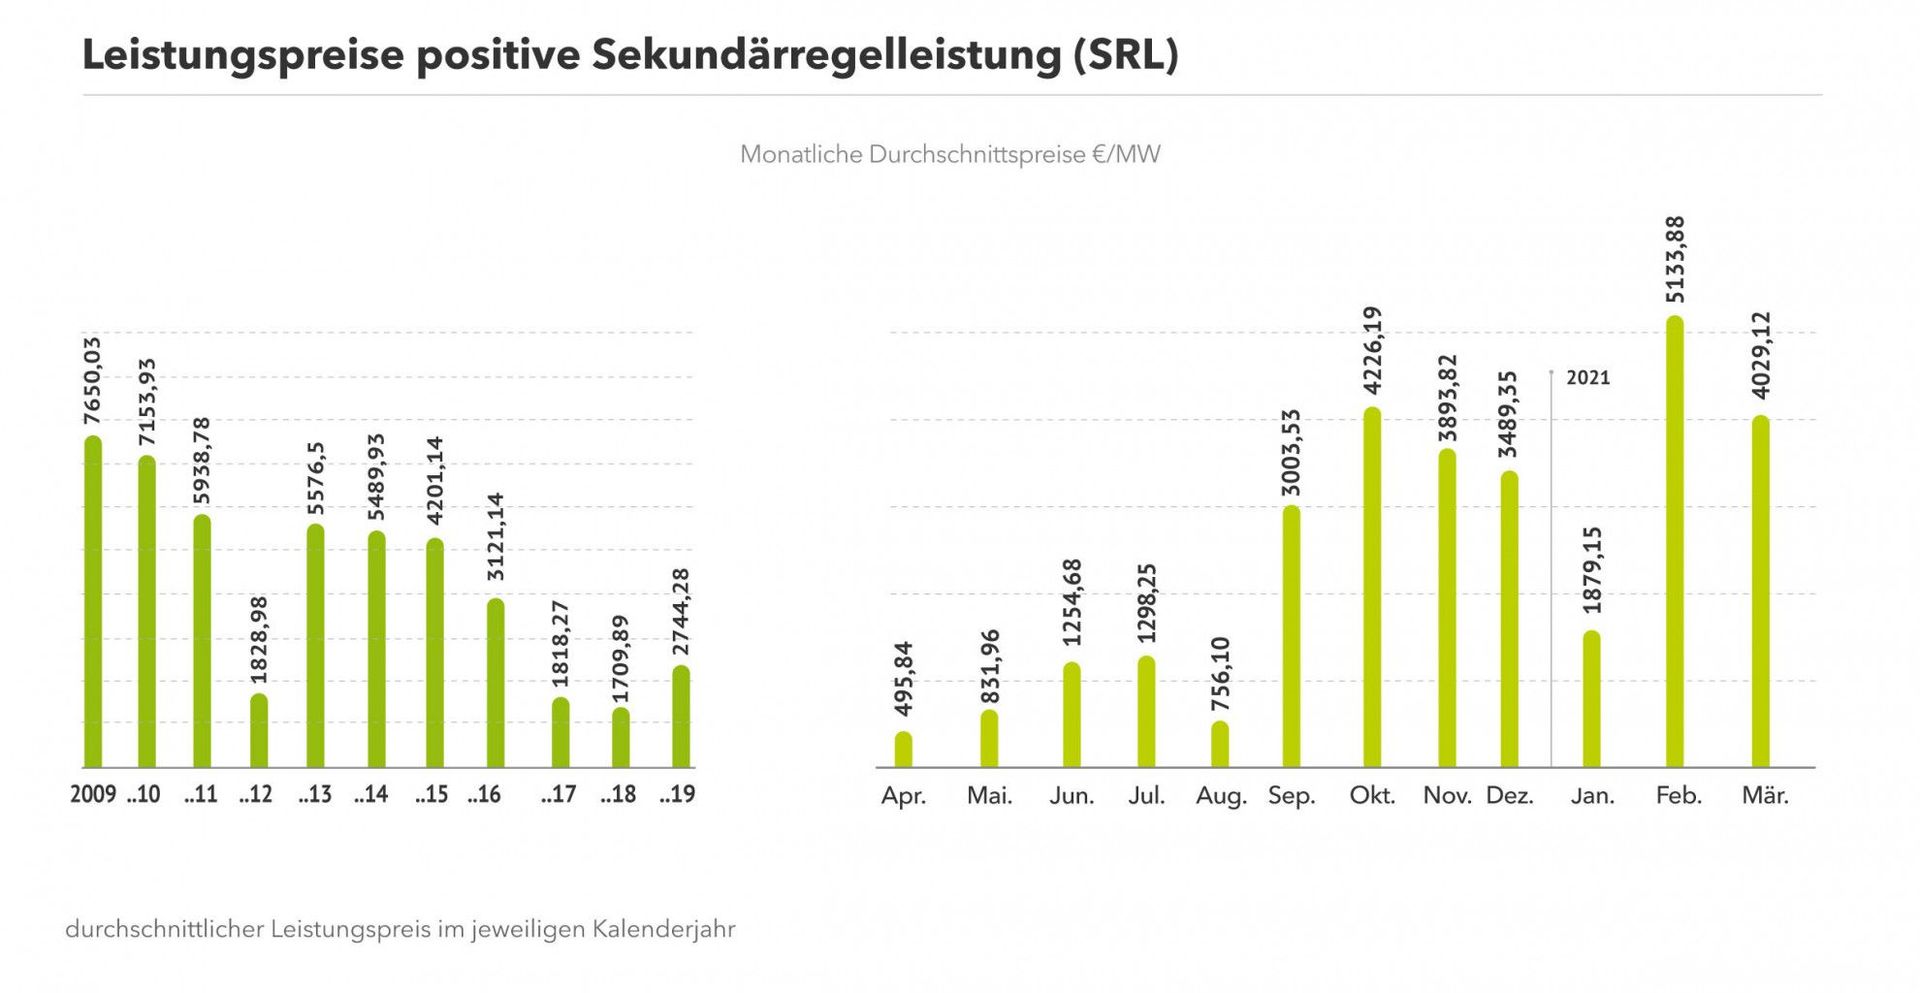 Die Grafik zeigt die durchschnittlichen Leistungspreise für positive SRL seit 2009 sowohl für das gesamte Jahr als auch die vergangenen Monate